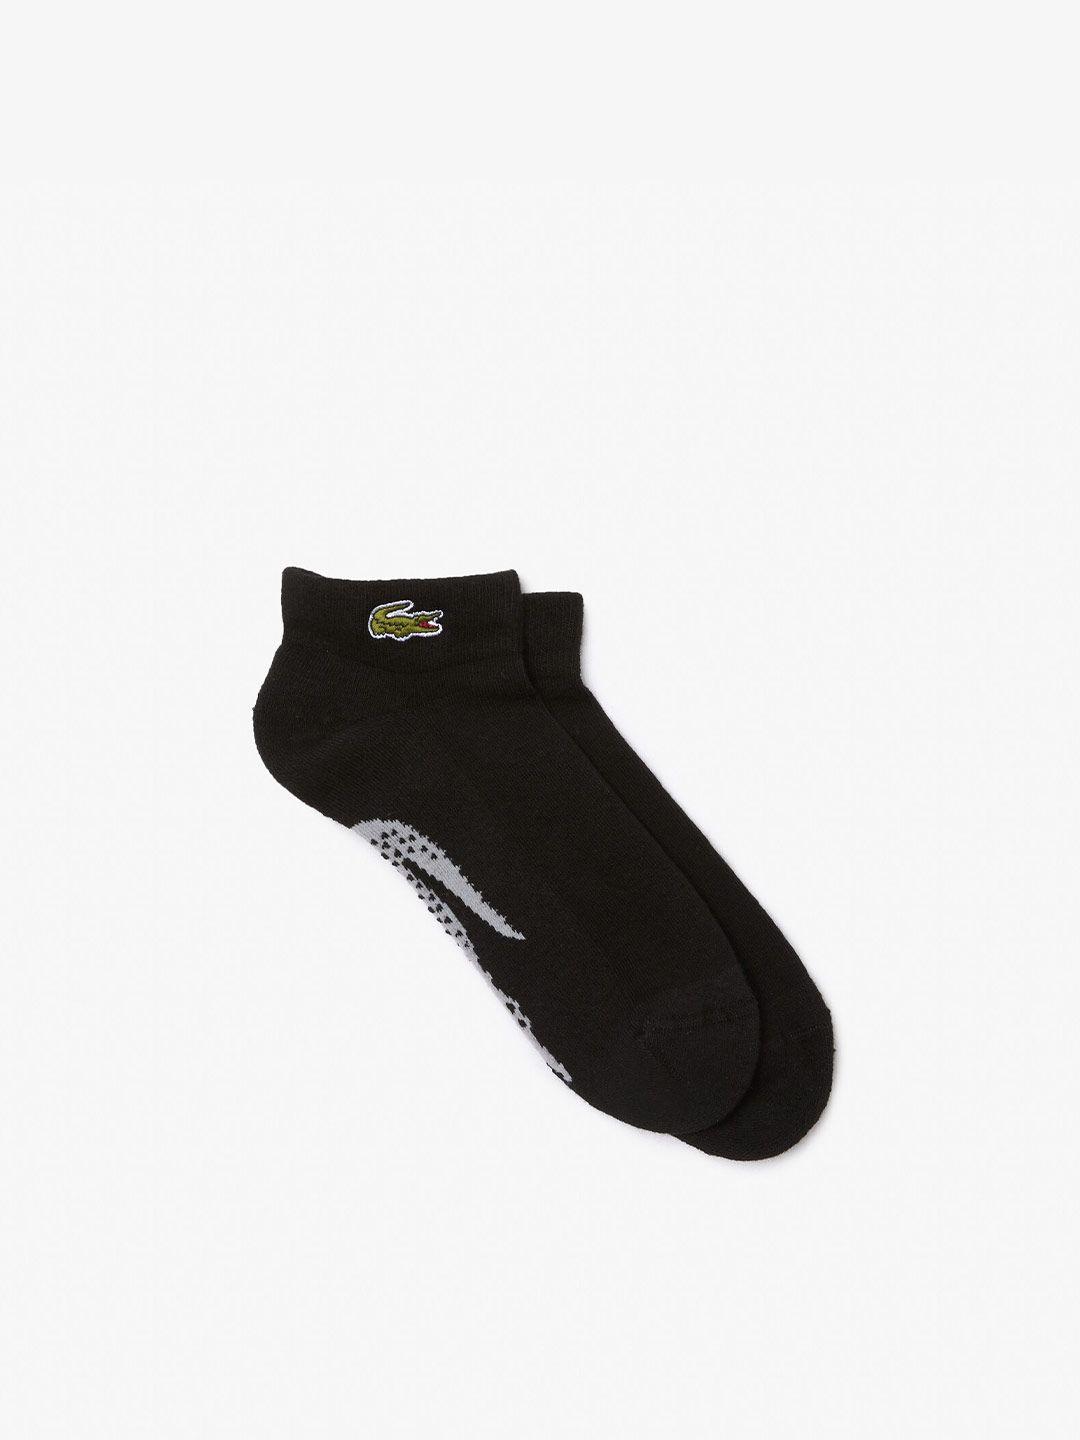 lacoste-men-brand-logo-printed-ankle-length-socks